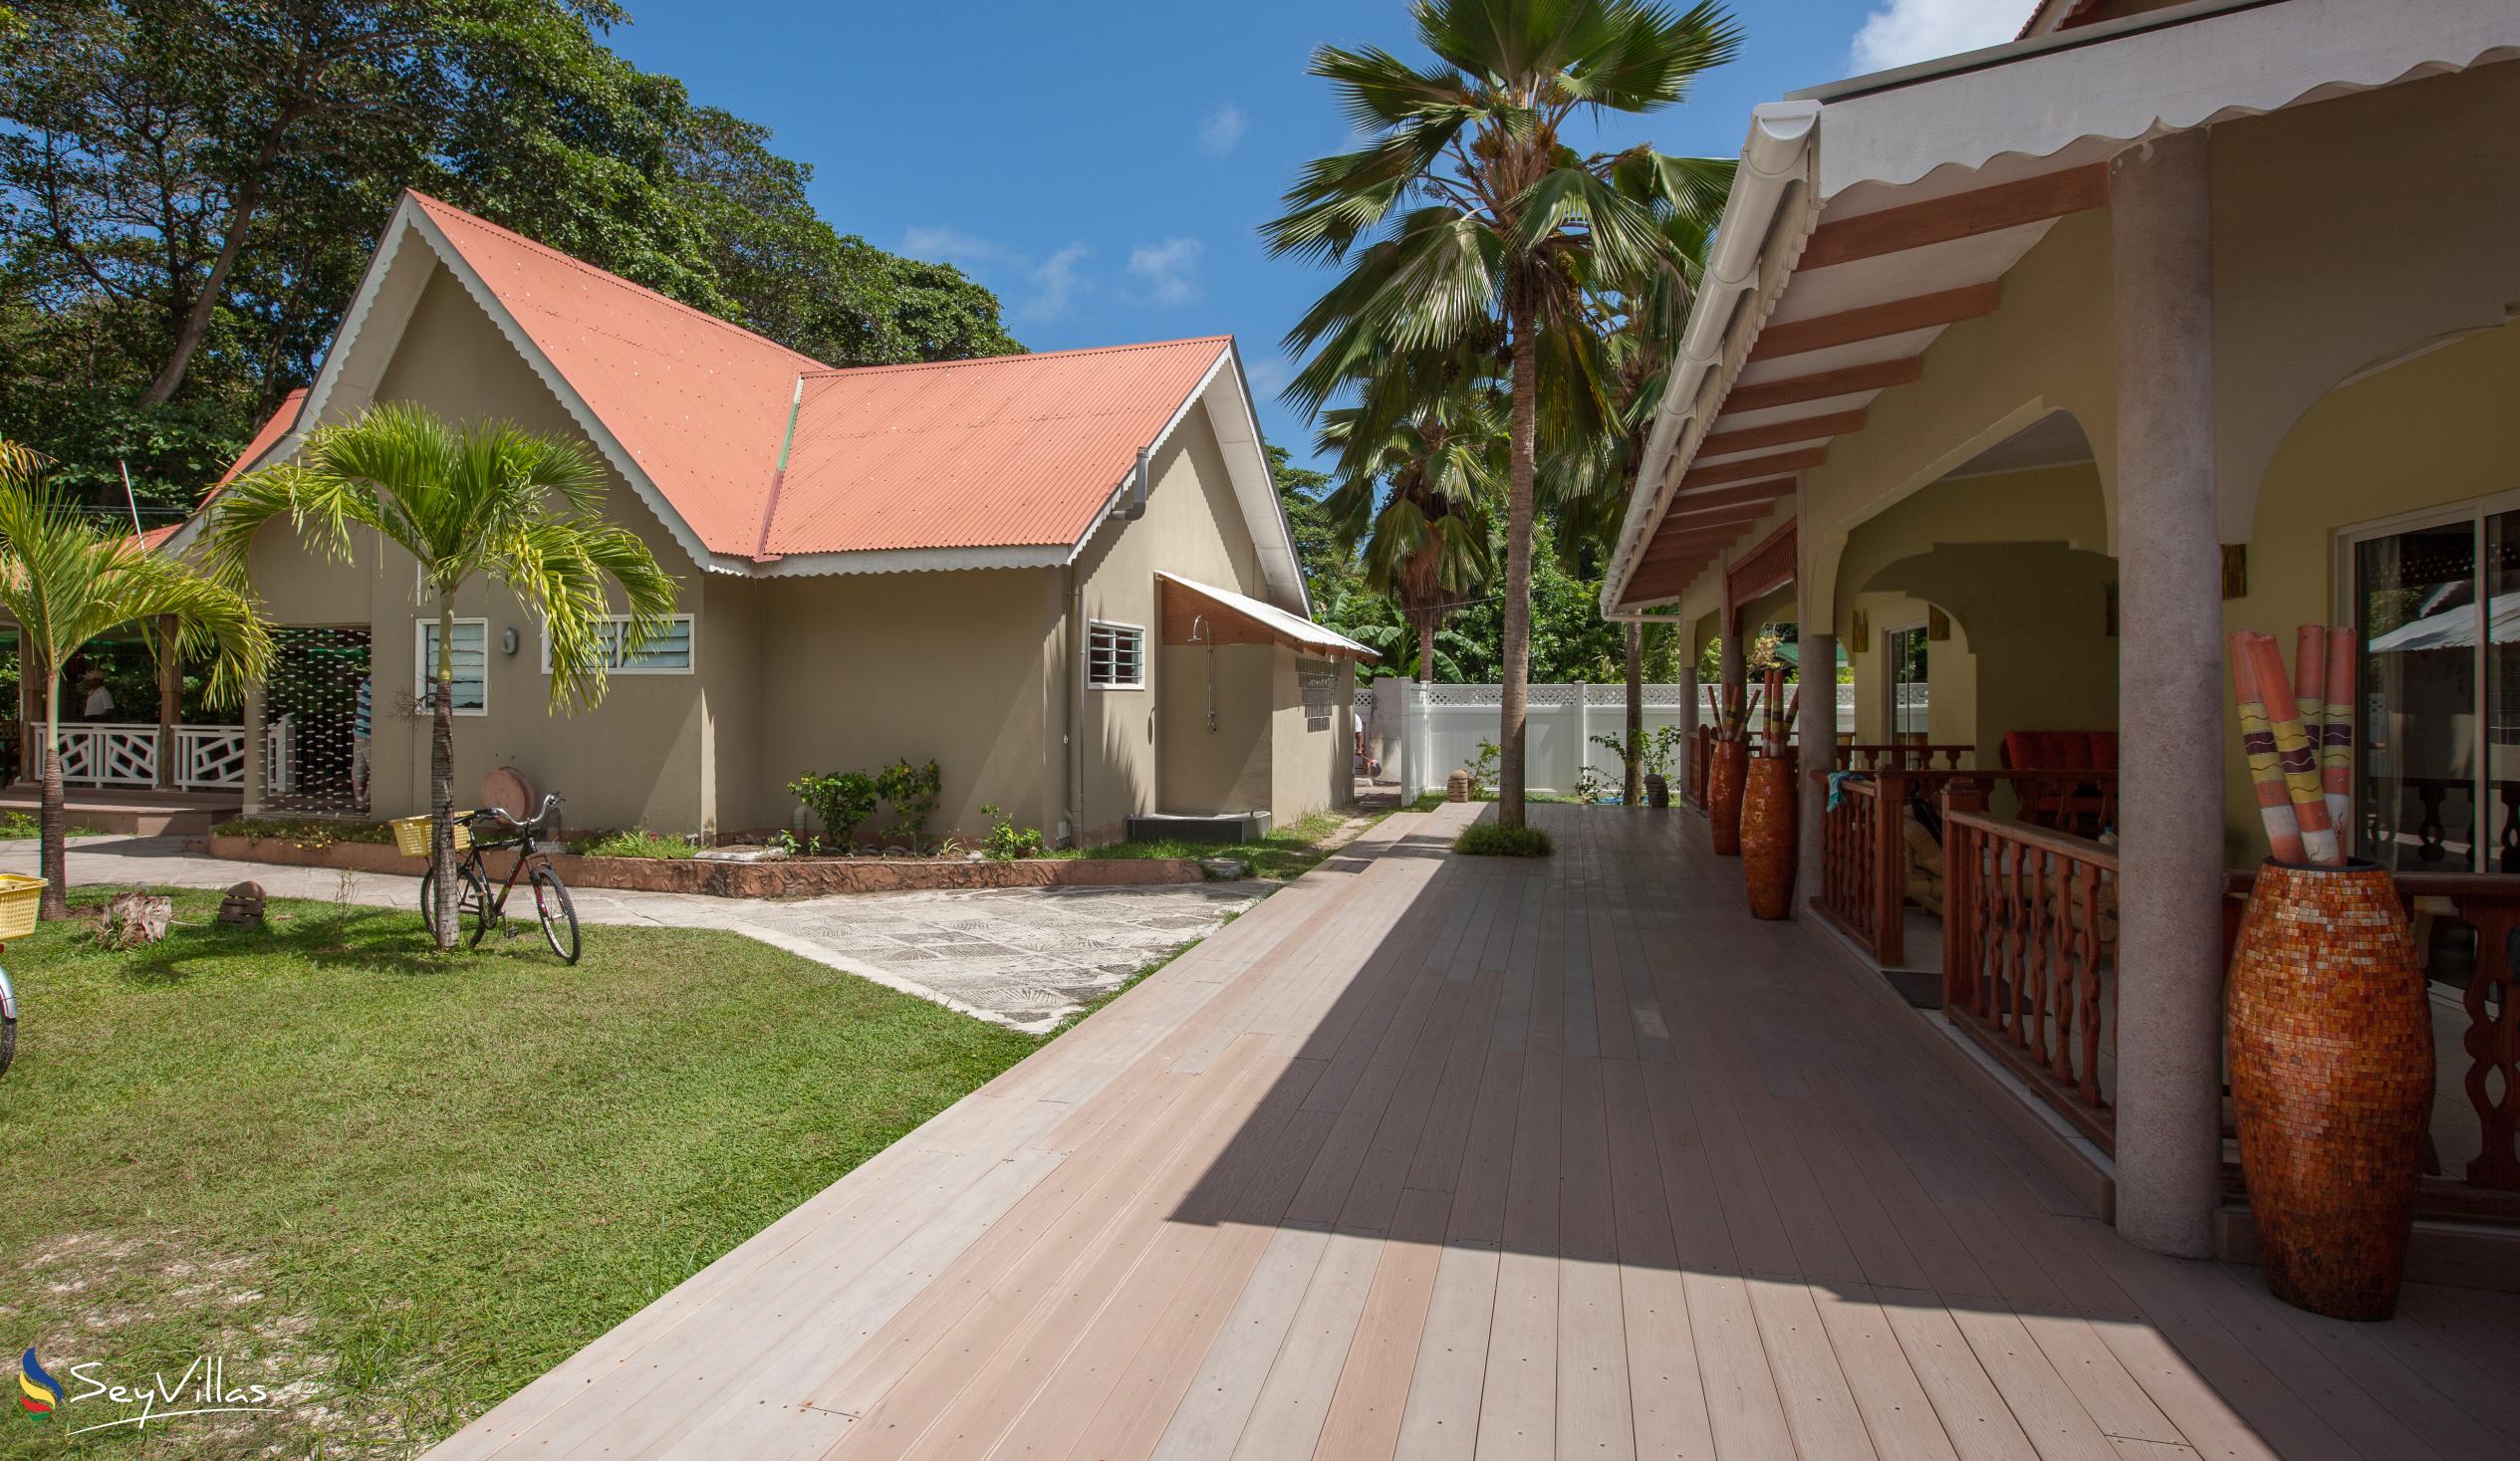 Foto 5: Villa Authentique - Extérieur - La Digue (Seychelles)